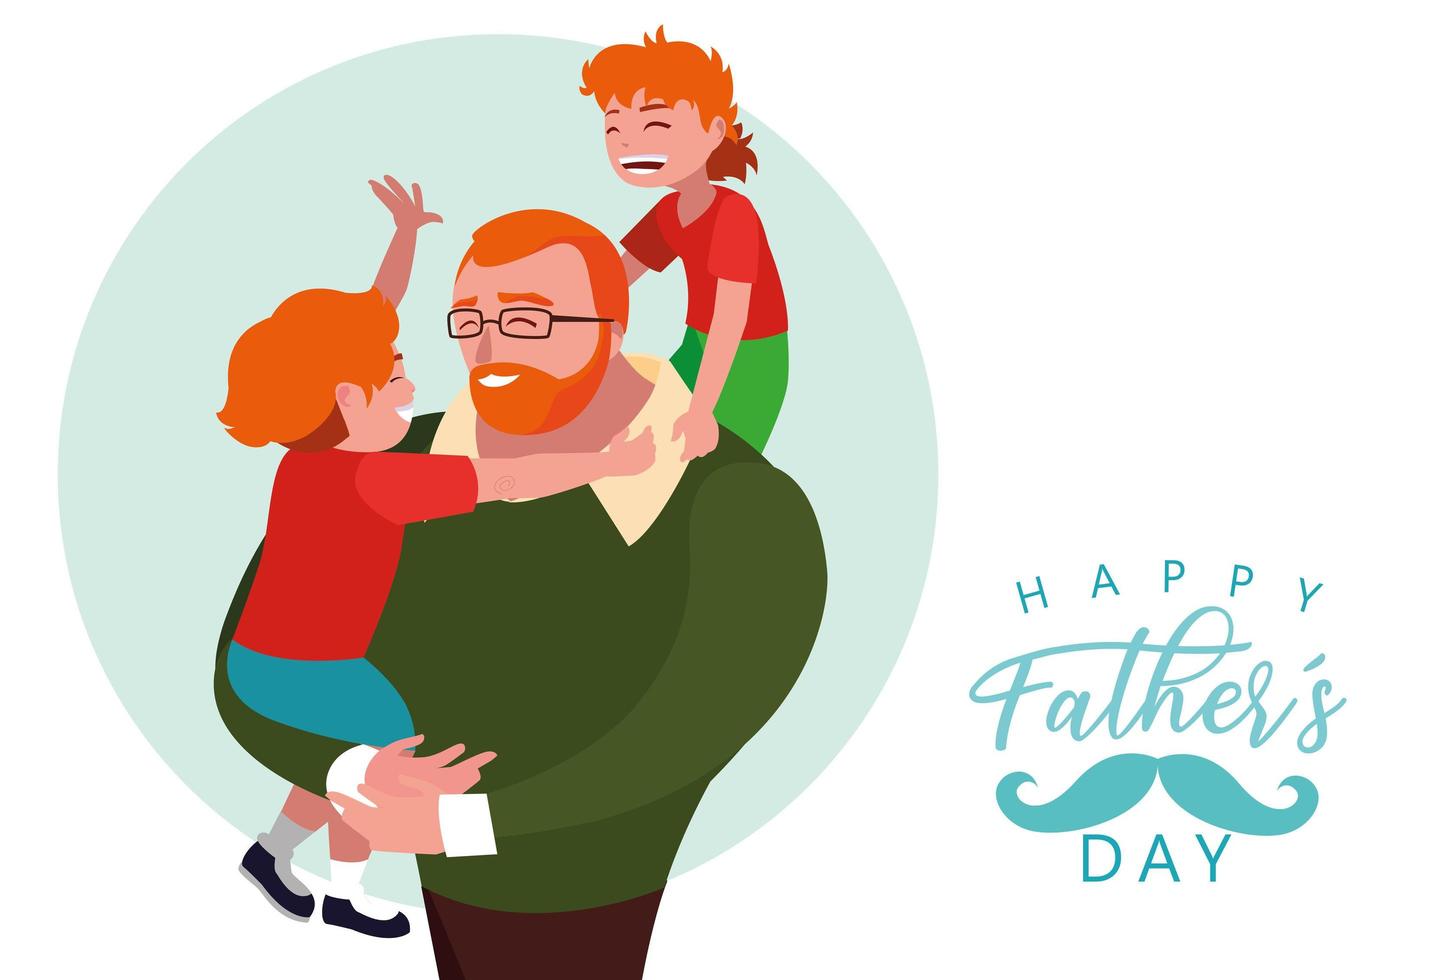 glückliche Vatertagskarte mit Vater und Kindern vektor